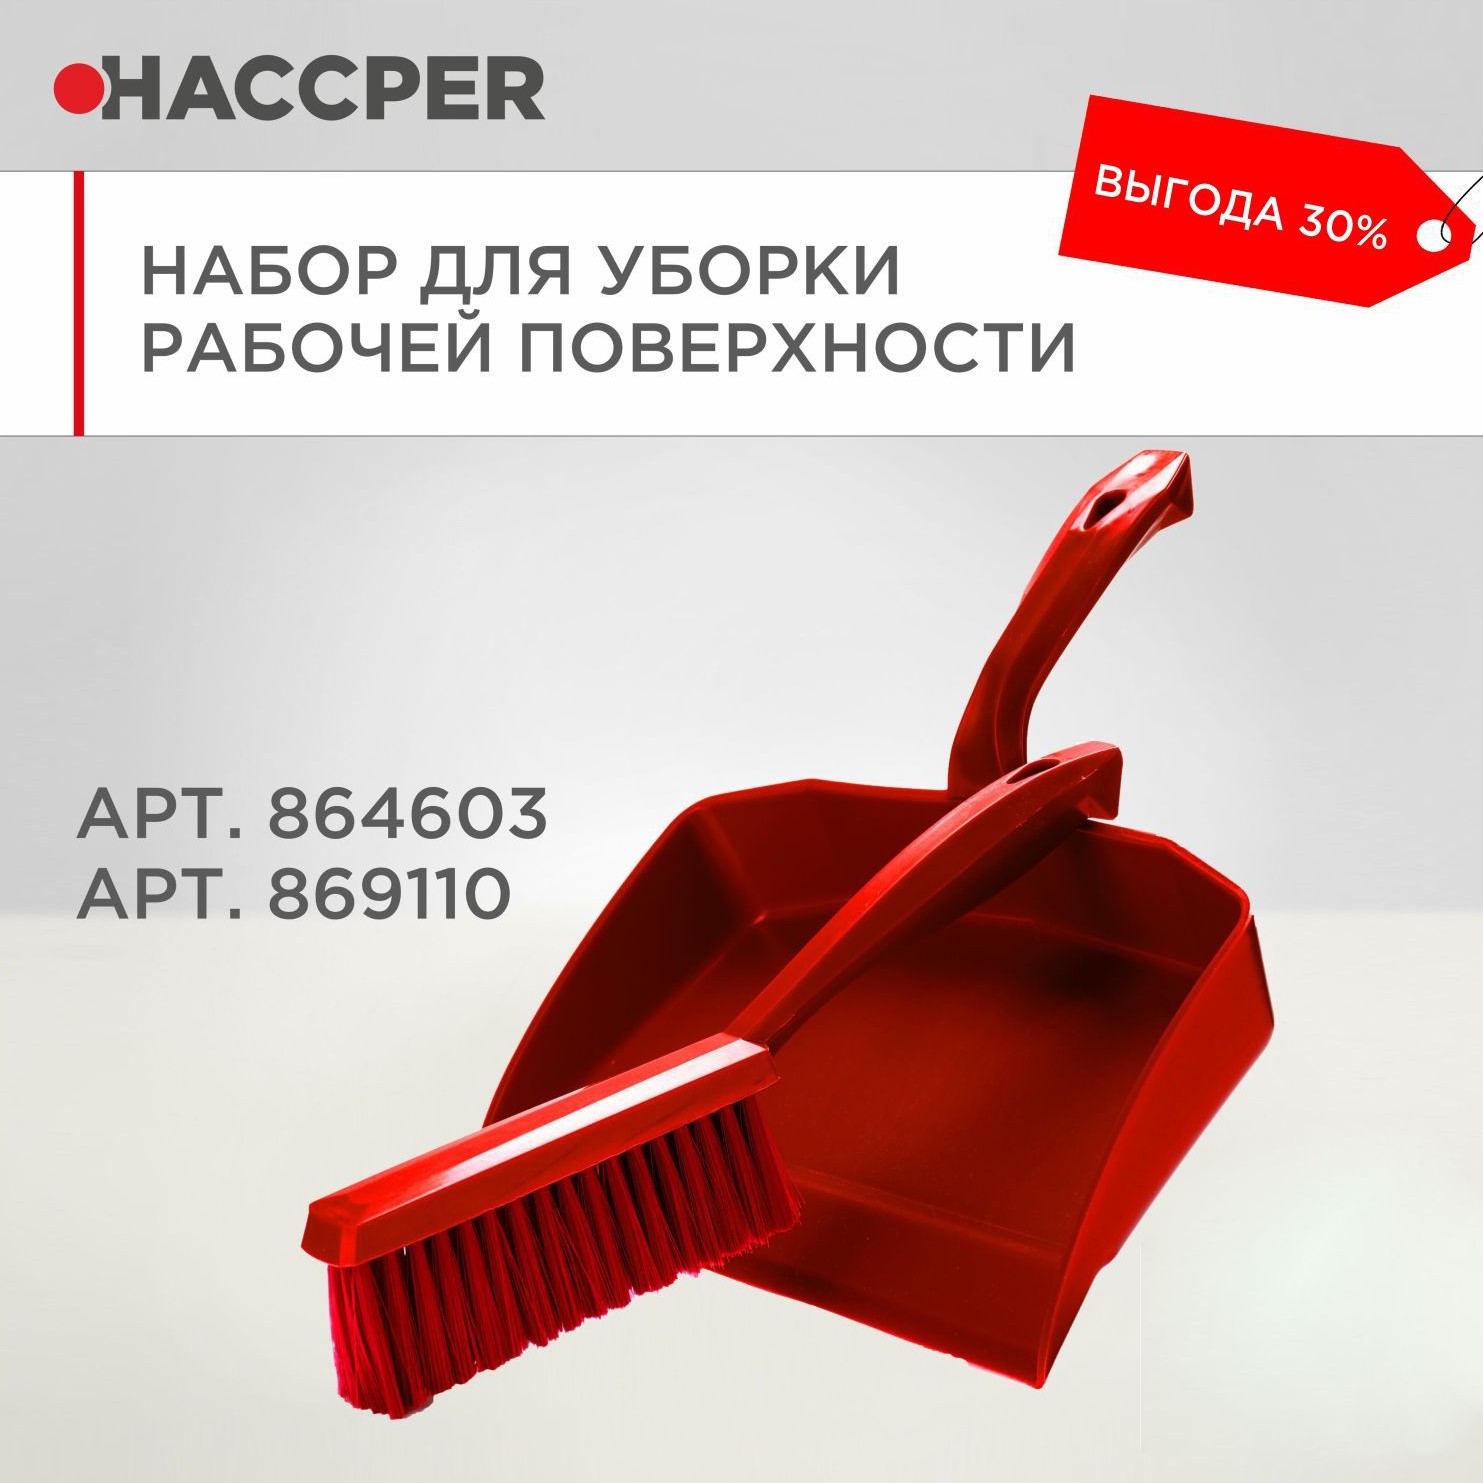 Набор для уборки рабочих поверхностей HACCPER, красный